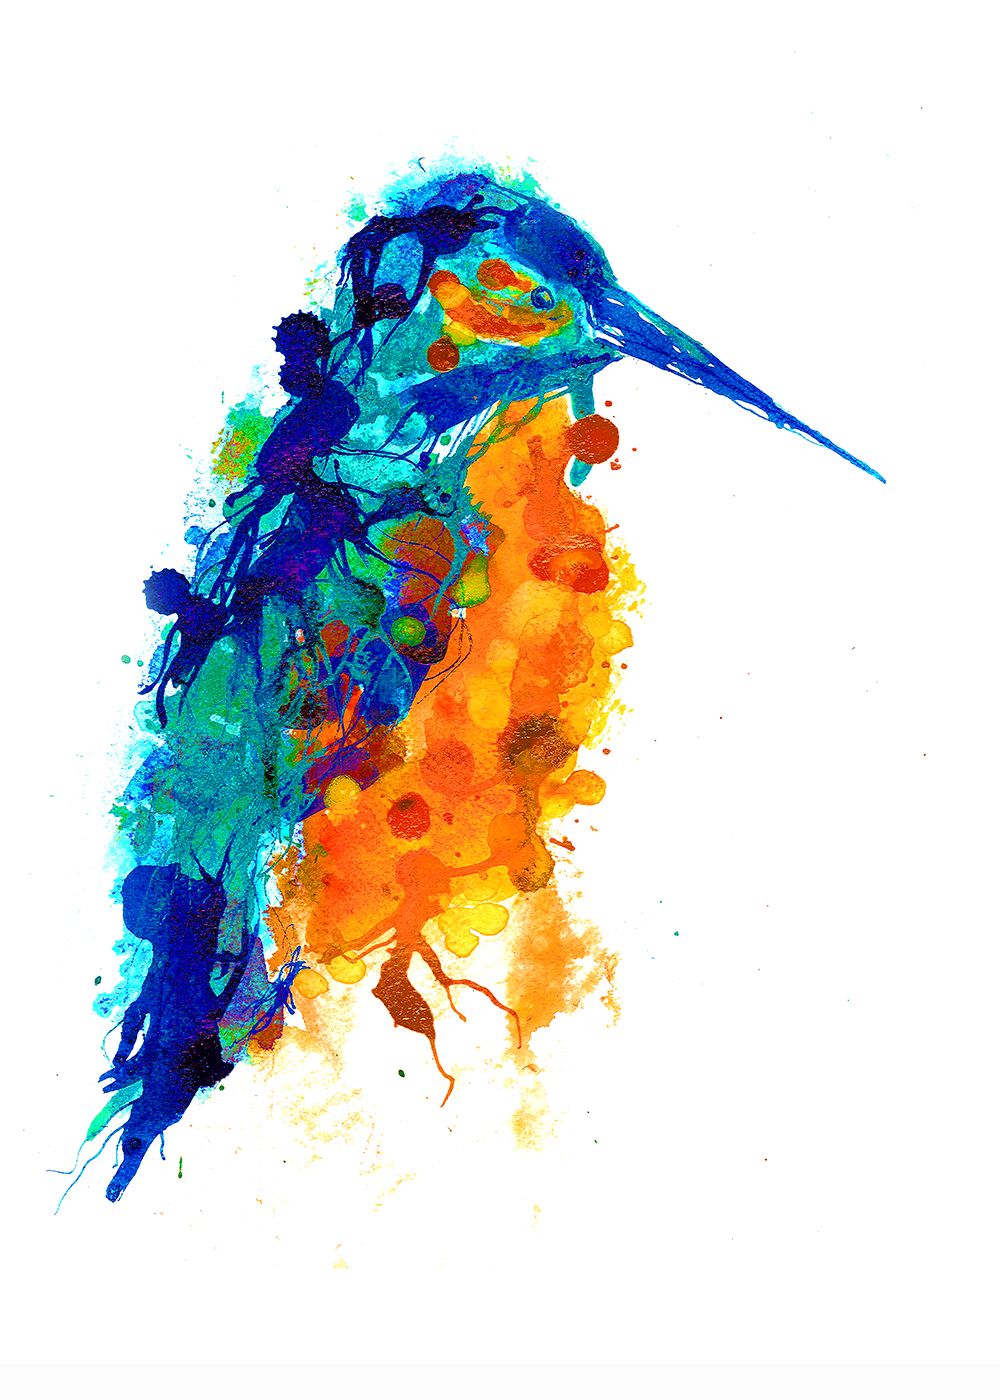 Kingfisher by Gavin Dobson